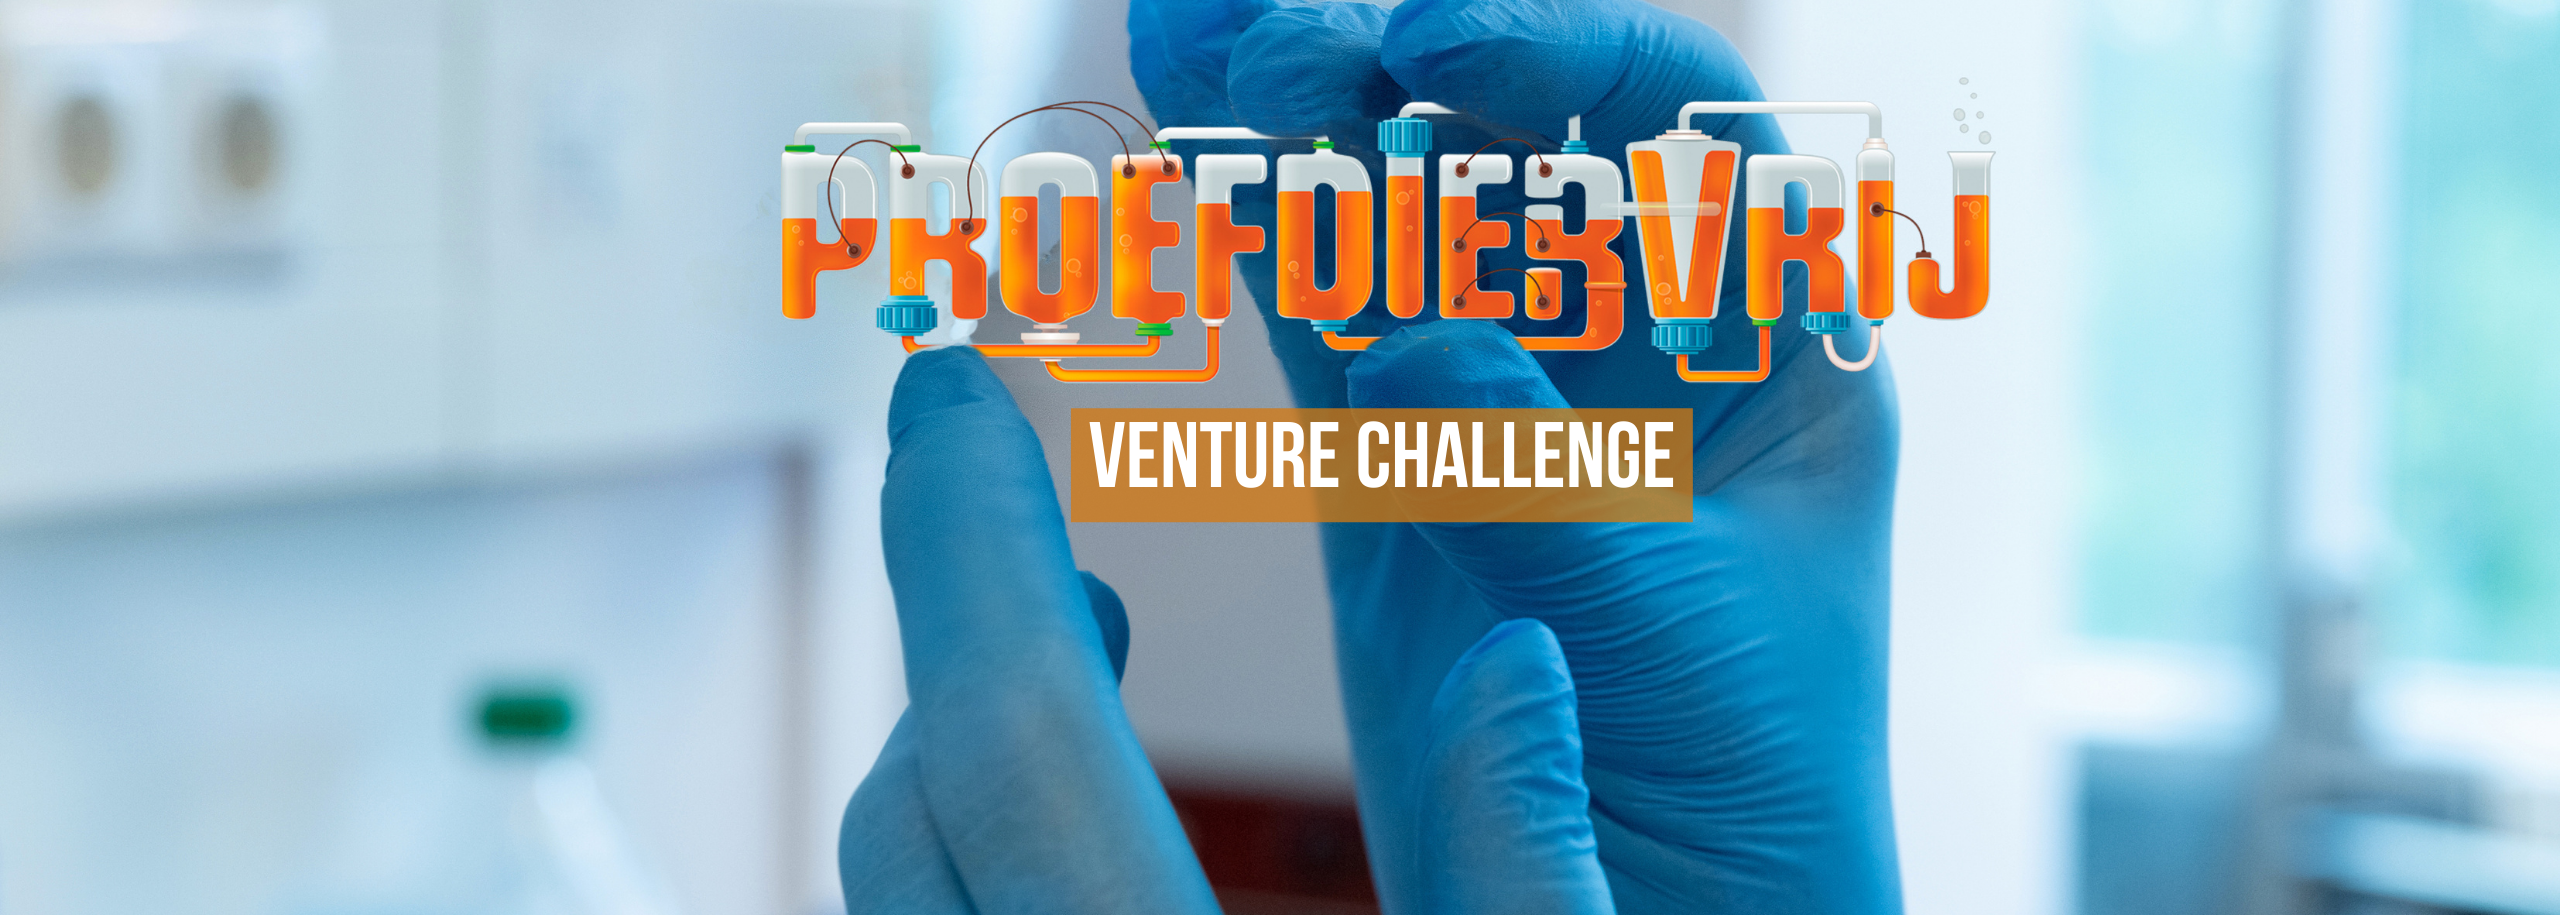 venture challenge